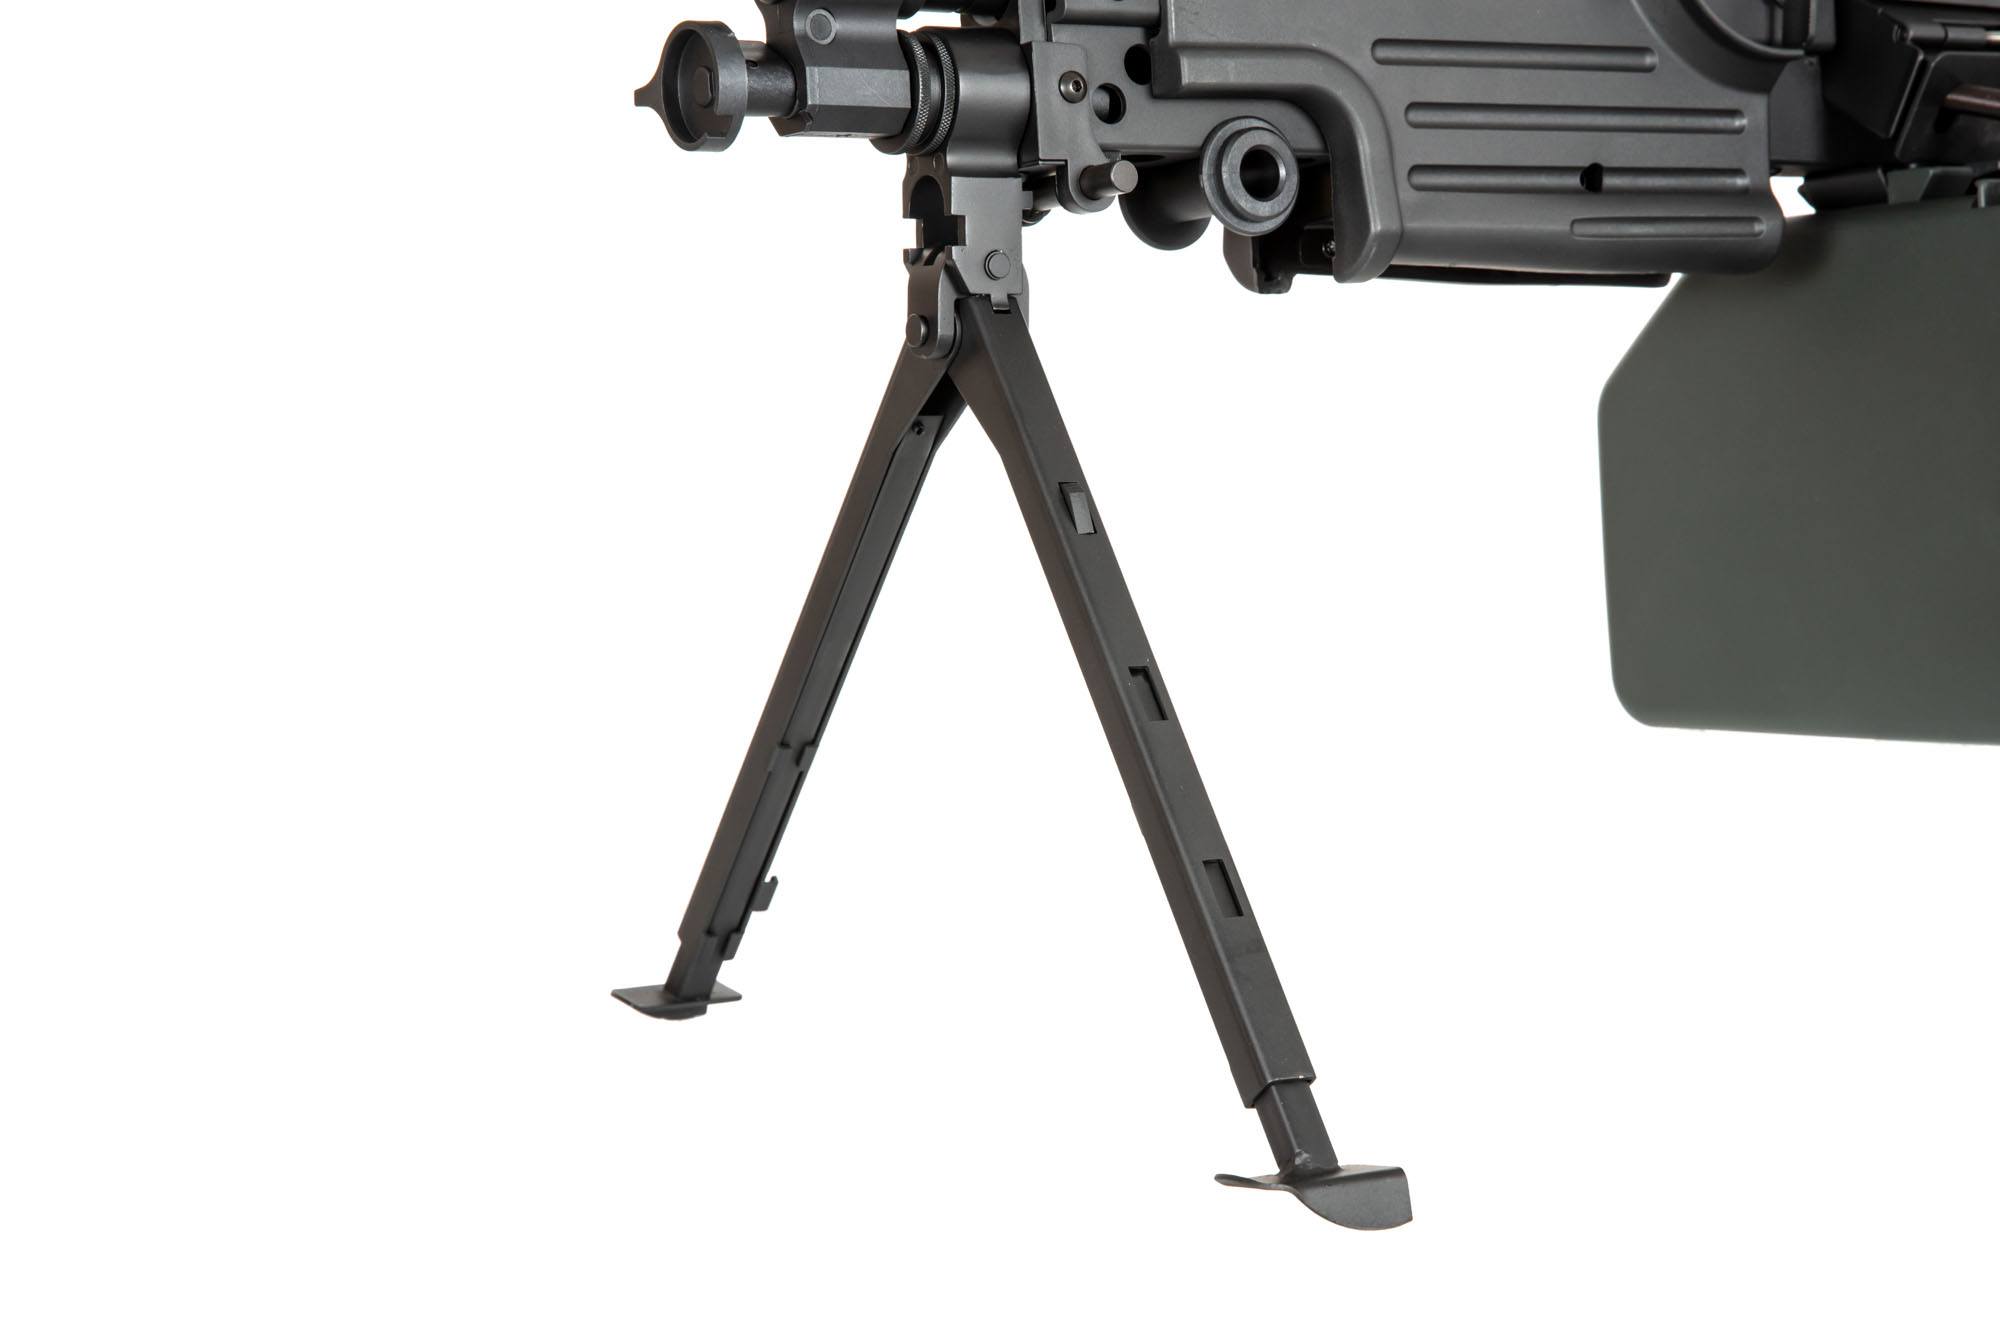 SA-249 MK2 CORE™ Machine Gun - Black